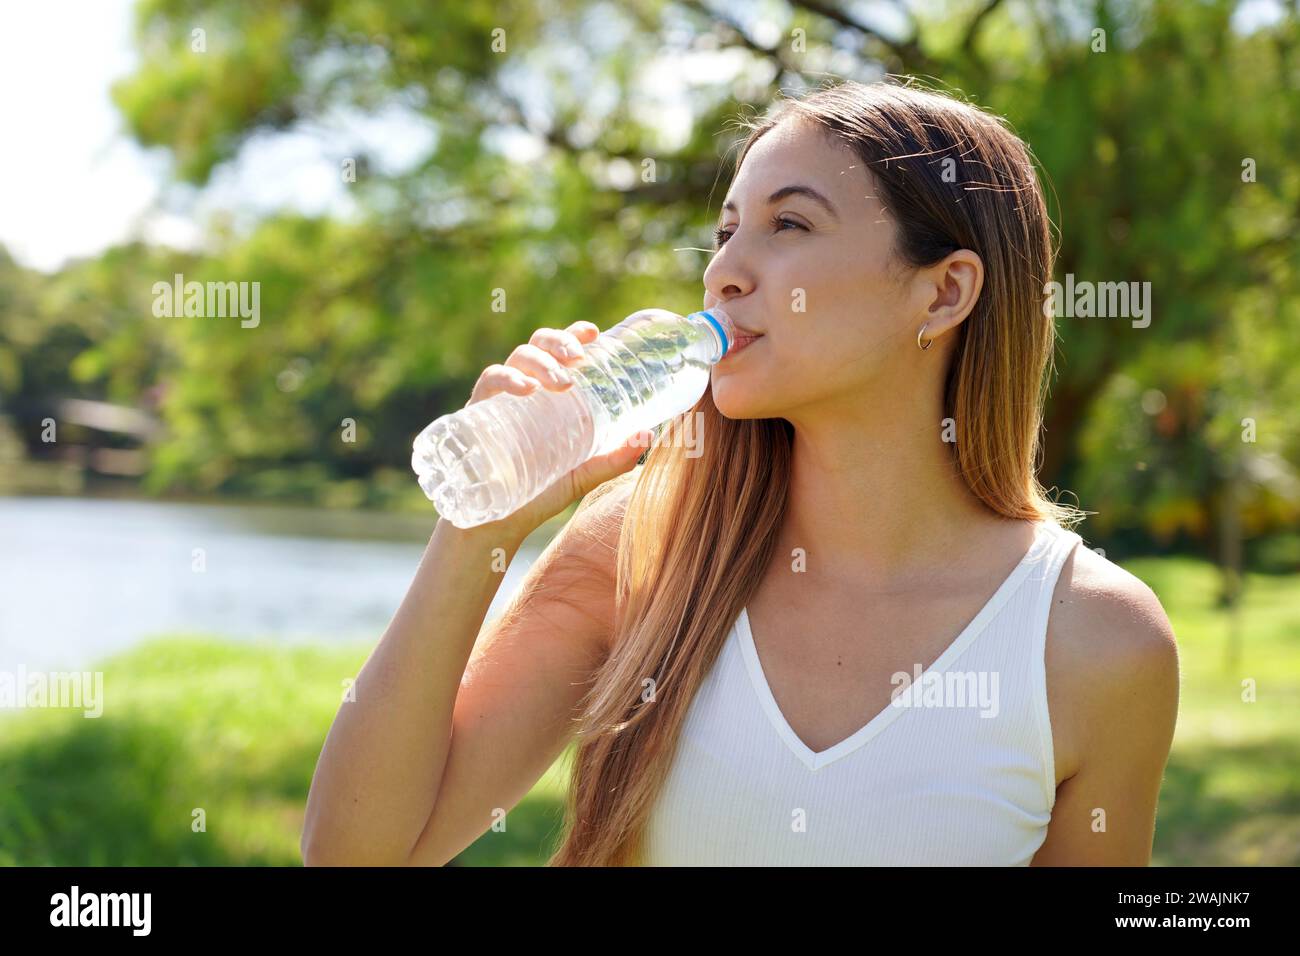 Donna fitness che beve acqua dalla bottiglia. Acqua potabile femminile caucasica brasiliana dopo esercizi o sport nel parco. Foto Stock